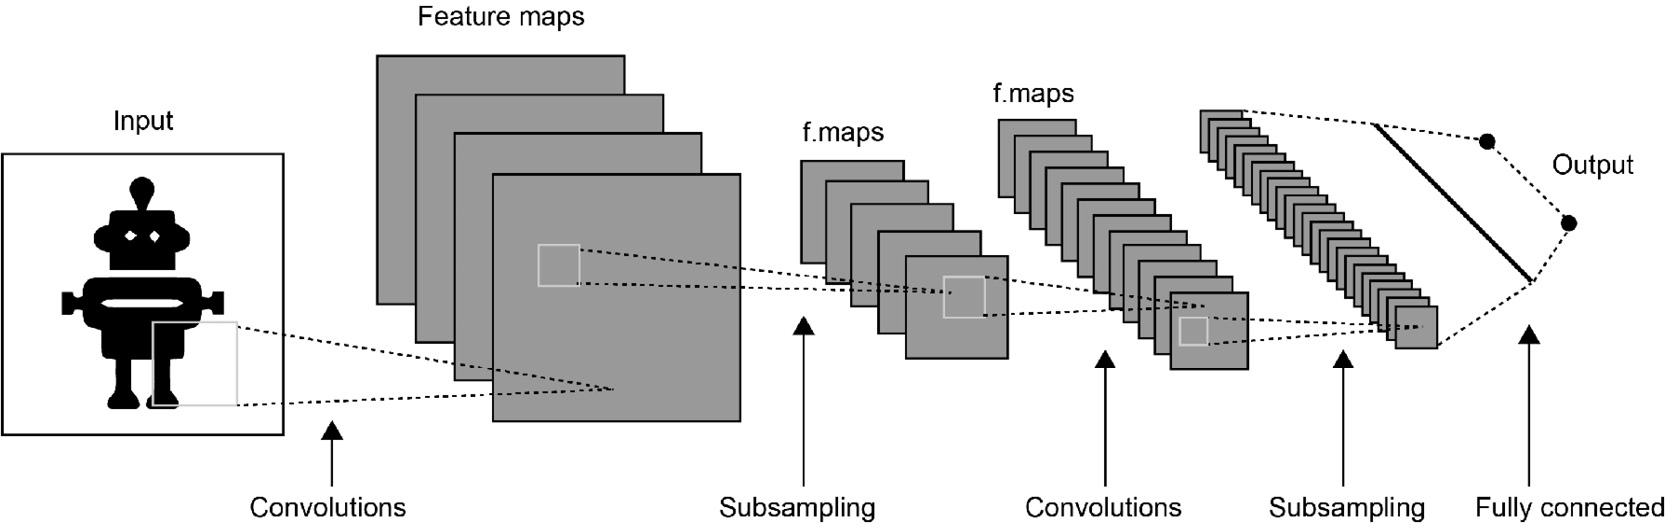 Figure 3.8: Convolutional neural network scheme
